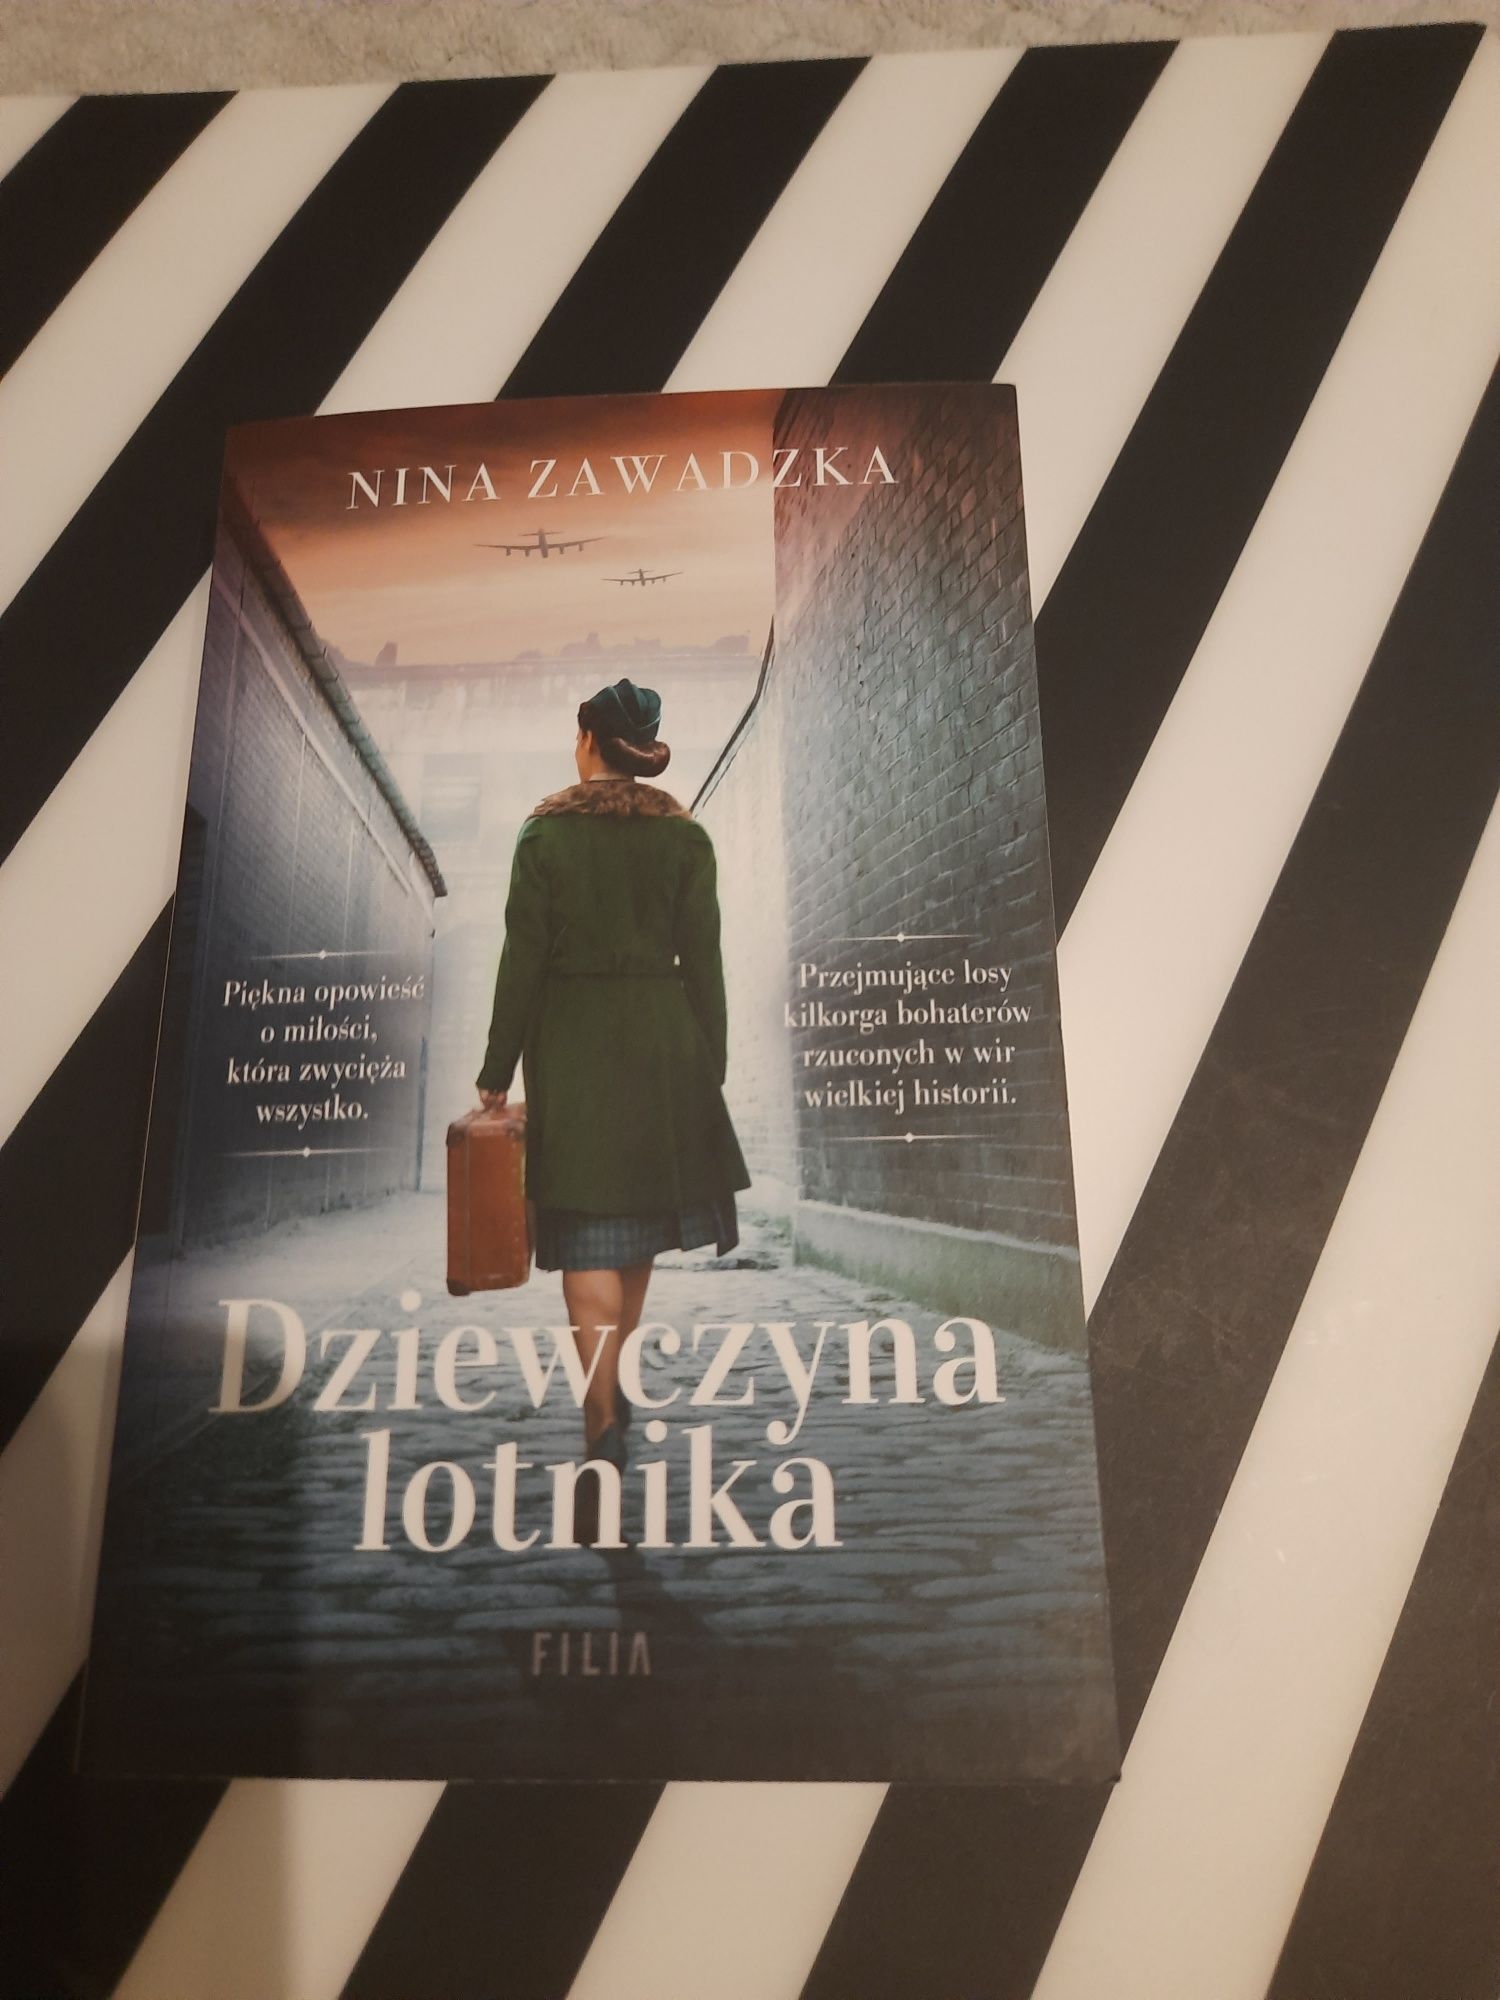 Książka pt."Dziewczyna lotnika" autor Nina Zawadzka